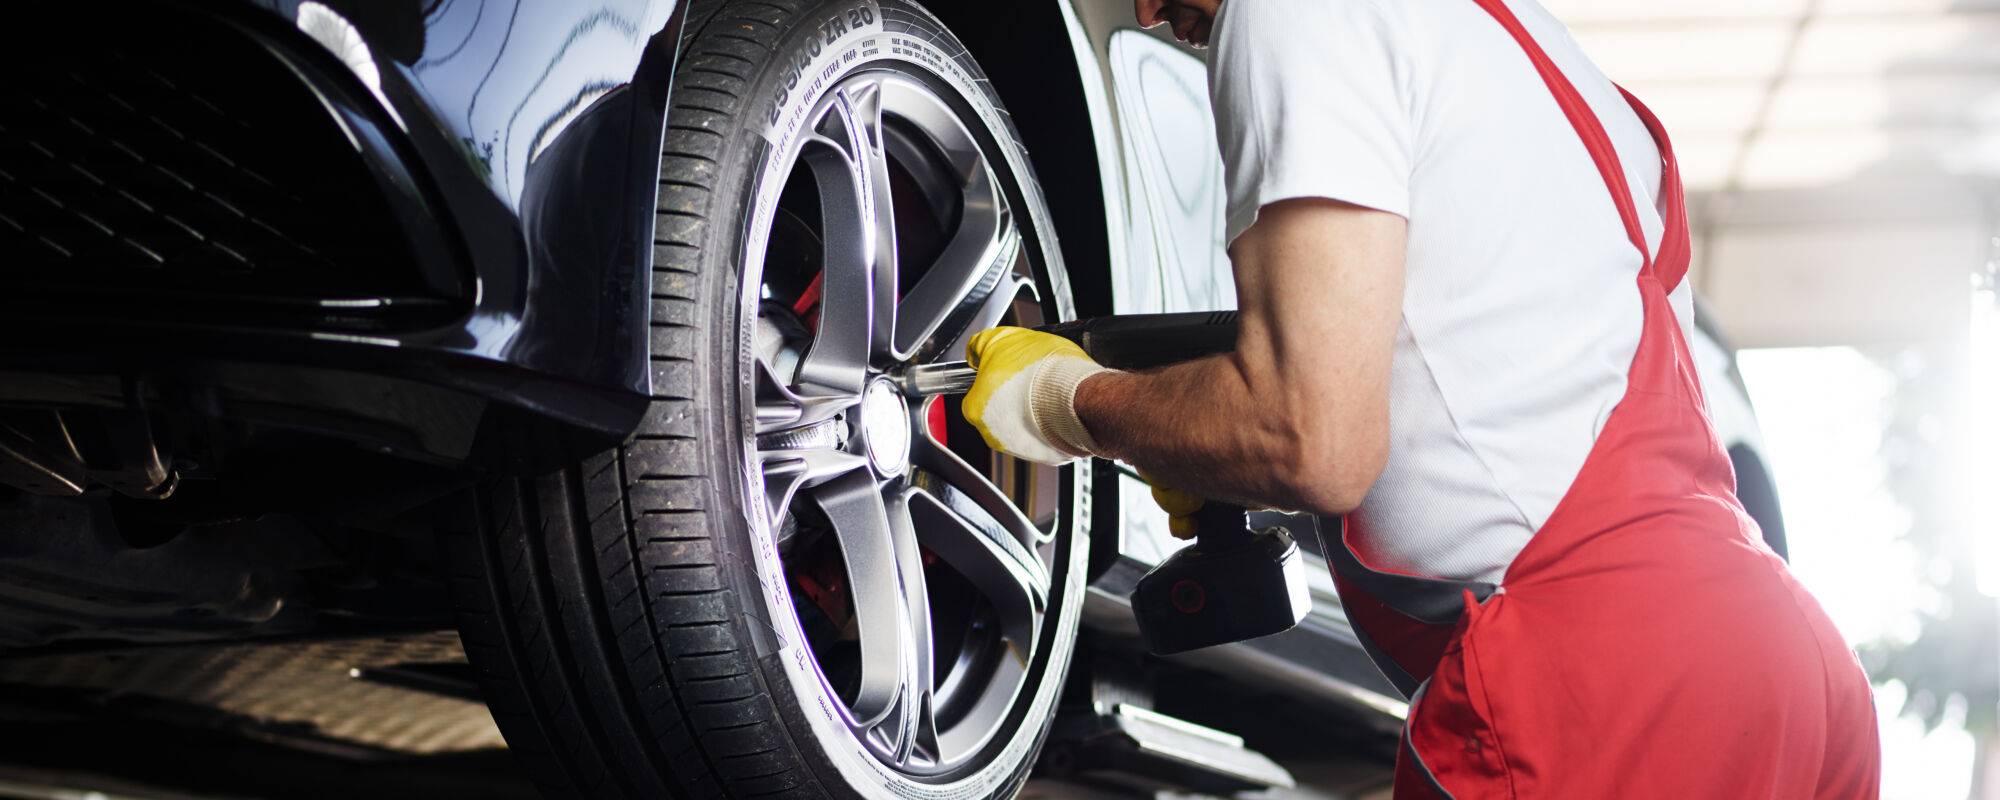 Entretien Moto : remplacement véhicule, réparation pièces, pneus